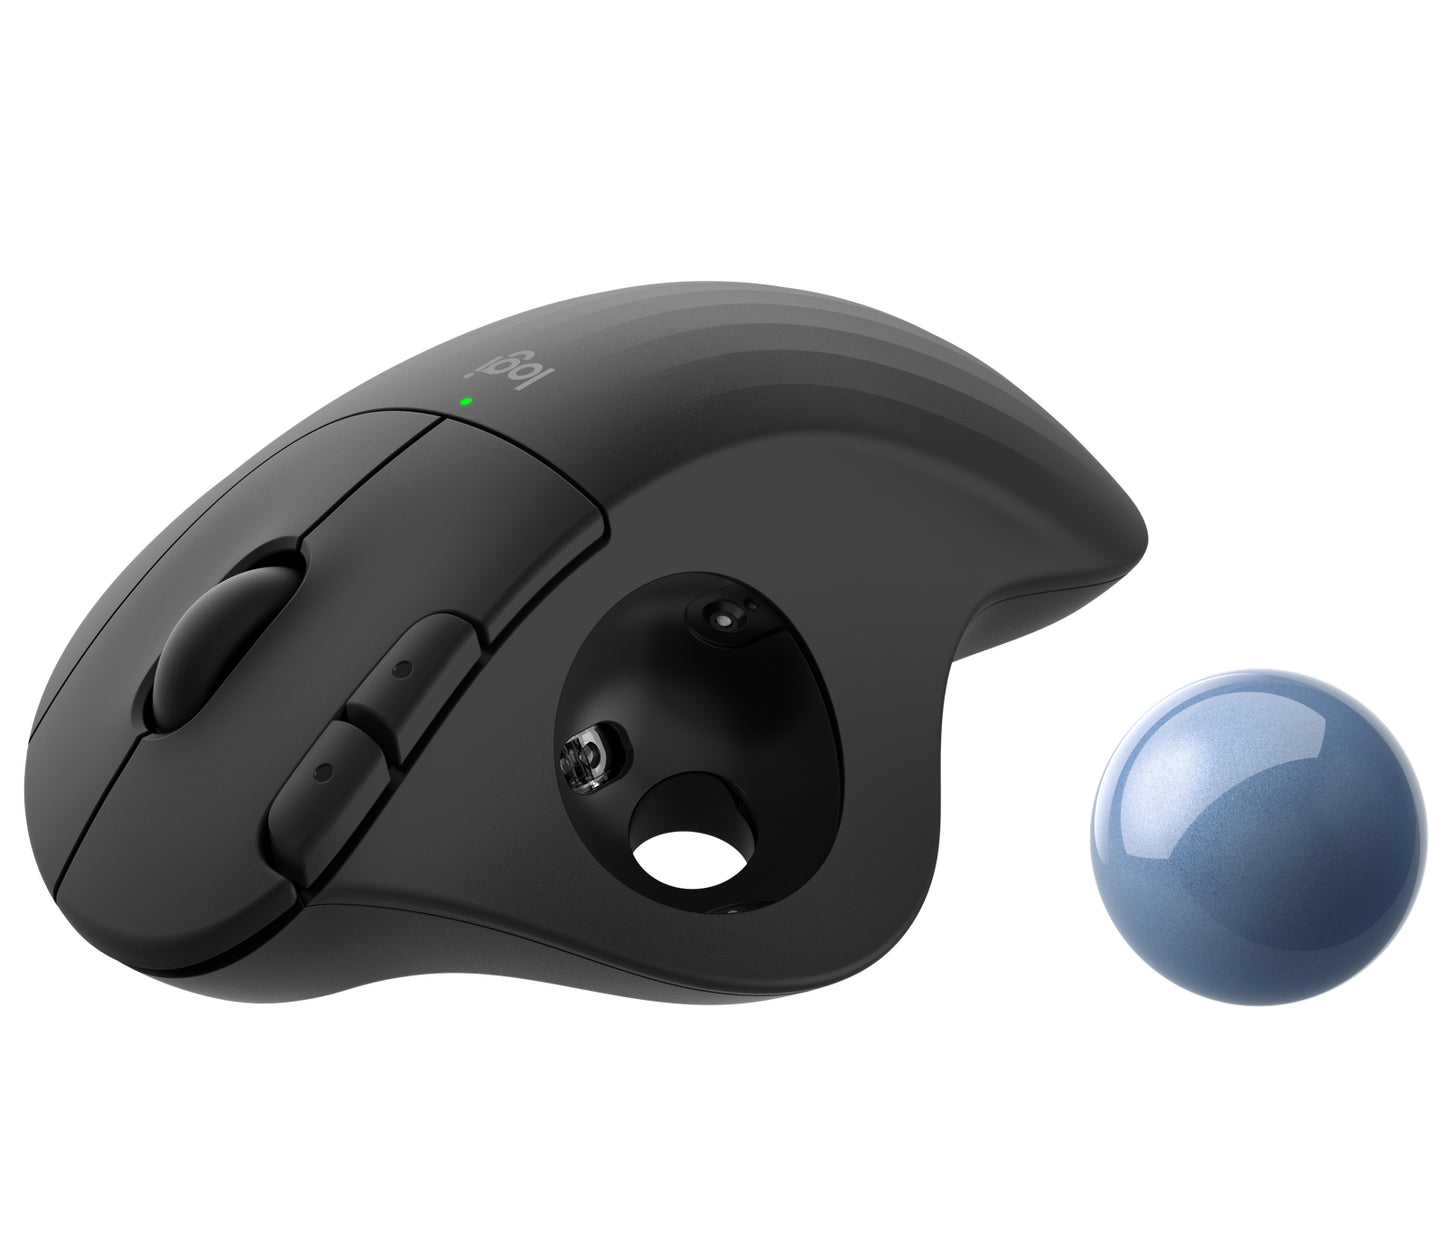 Mouse Ergo M575 Trackball Logitech, Inalámbrico, Ergonómico, Bluetooth/USB, 2000DPI, Negro